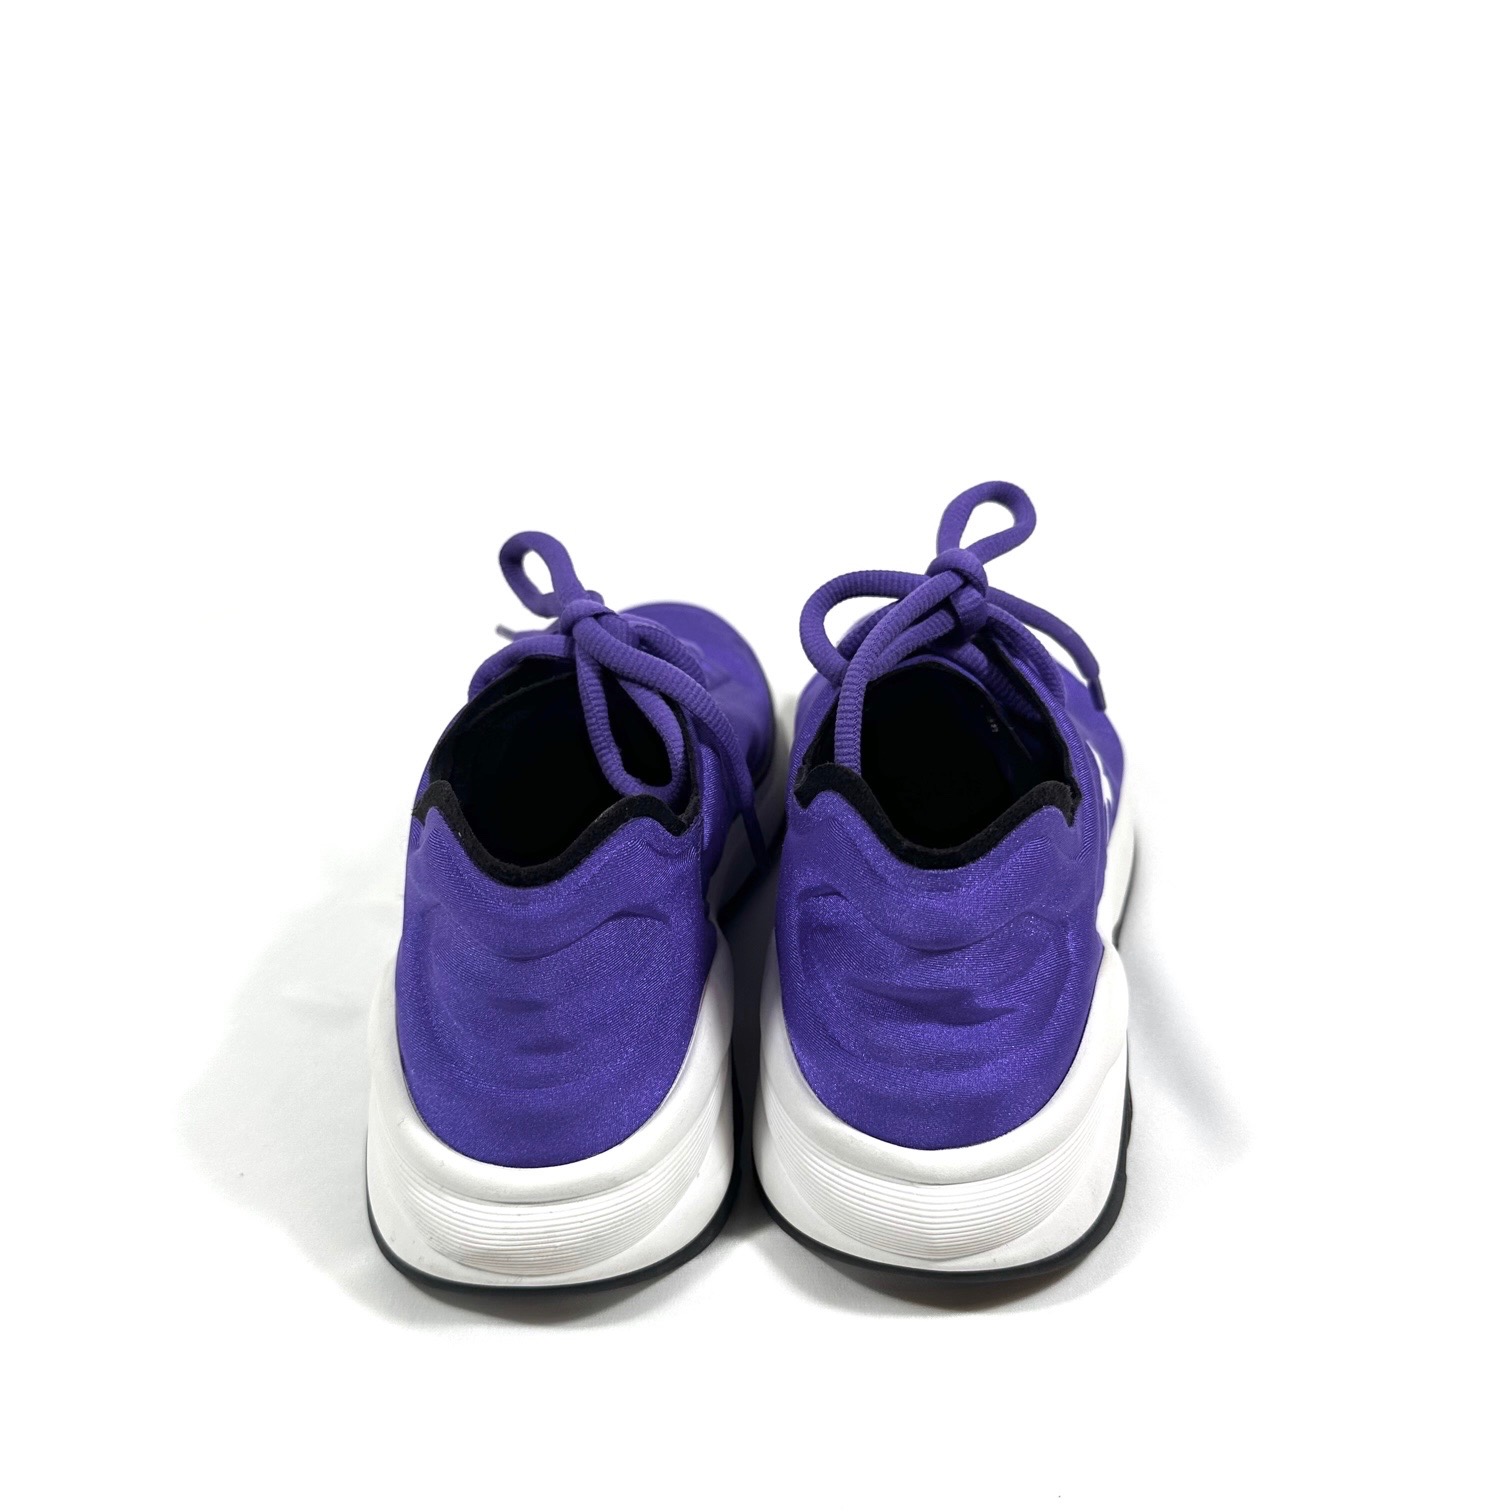 Кросівки Chanel Crystal Sneakers Beige (41): 1 170 грн. - Кросівки